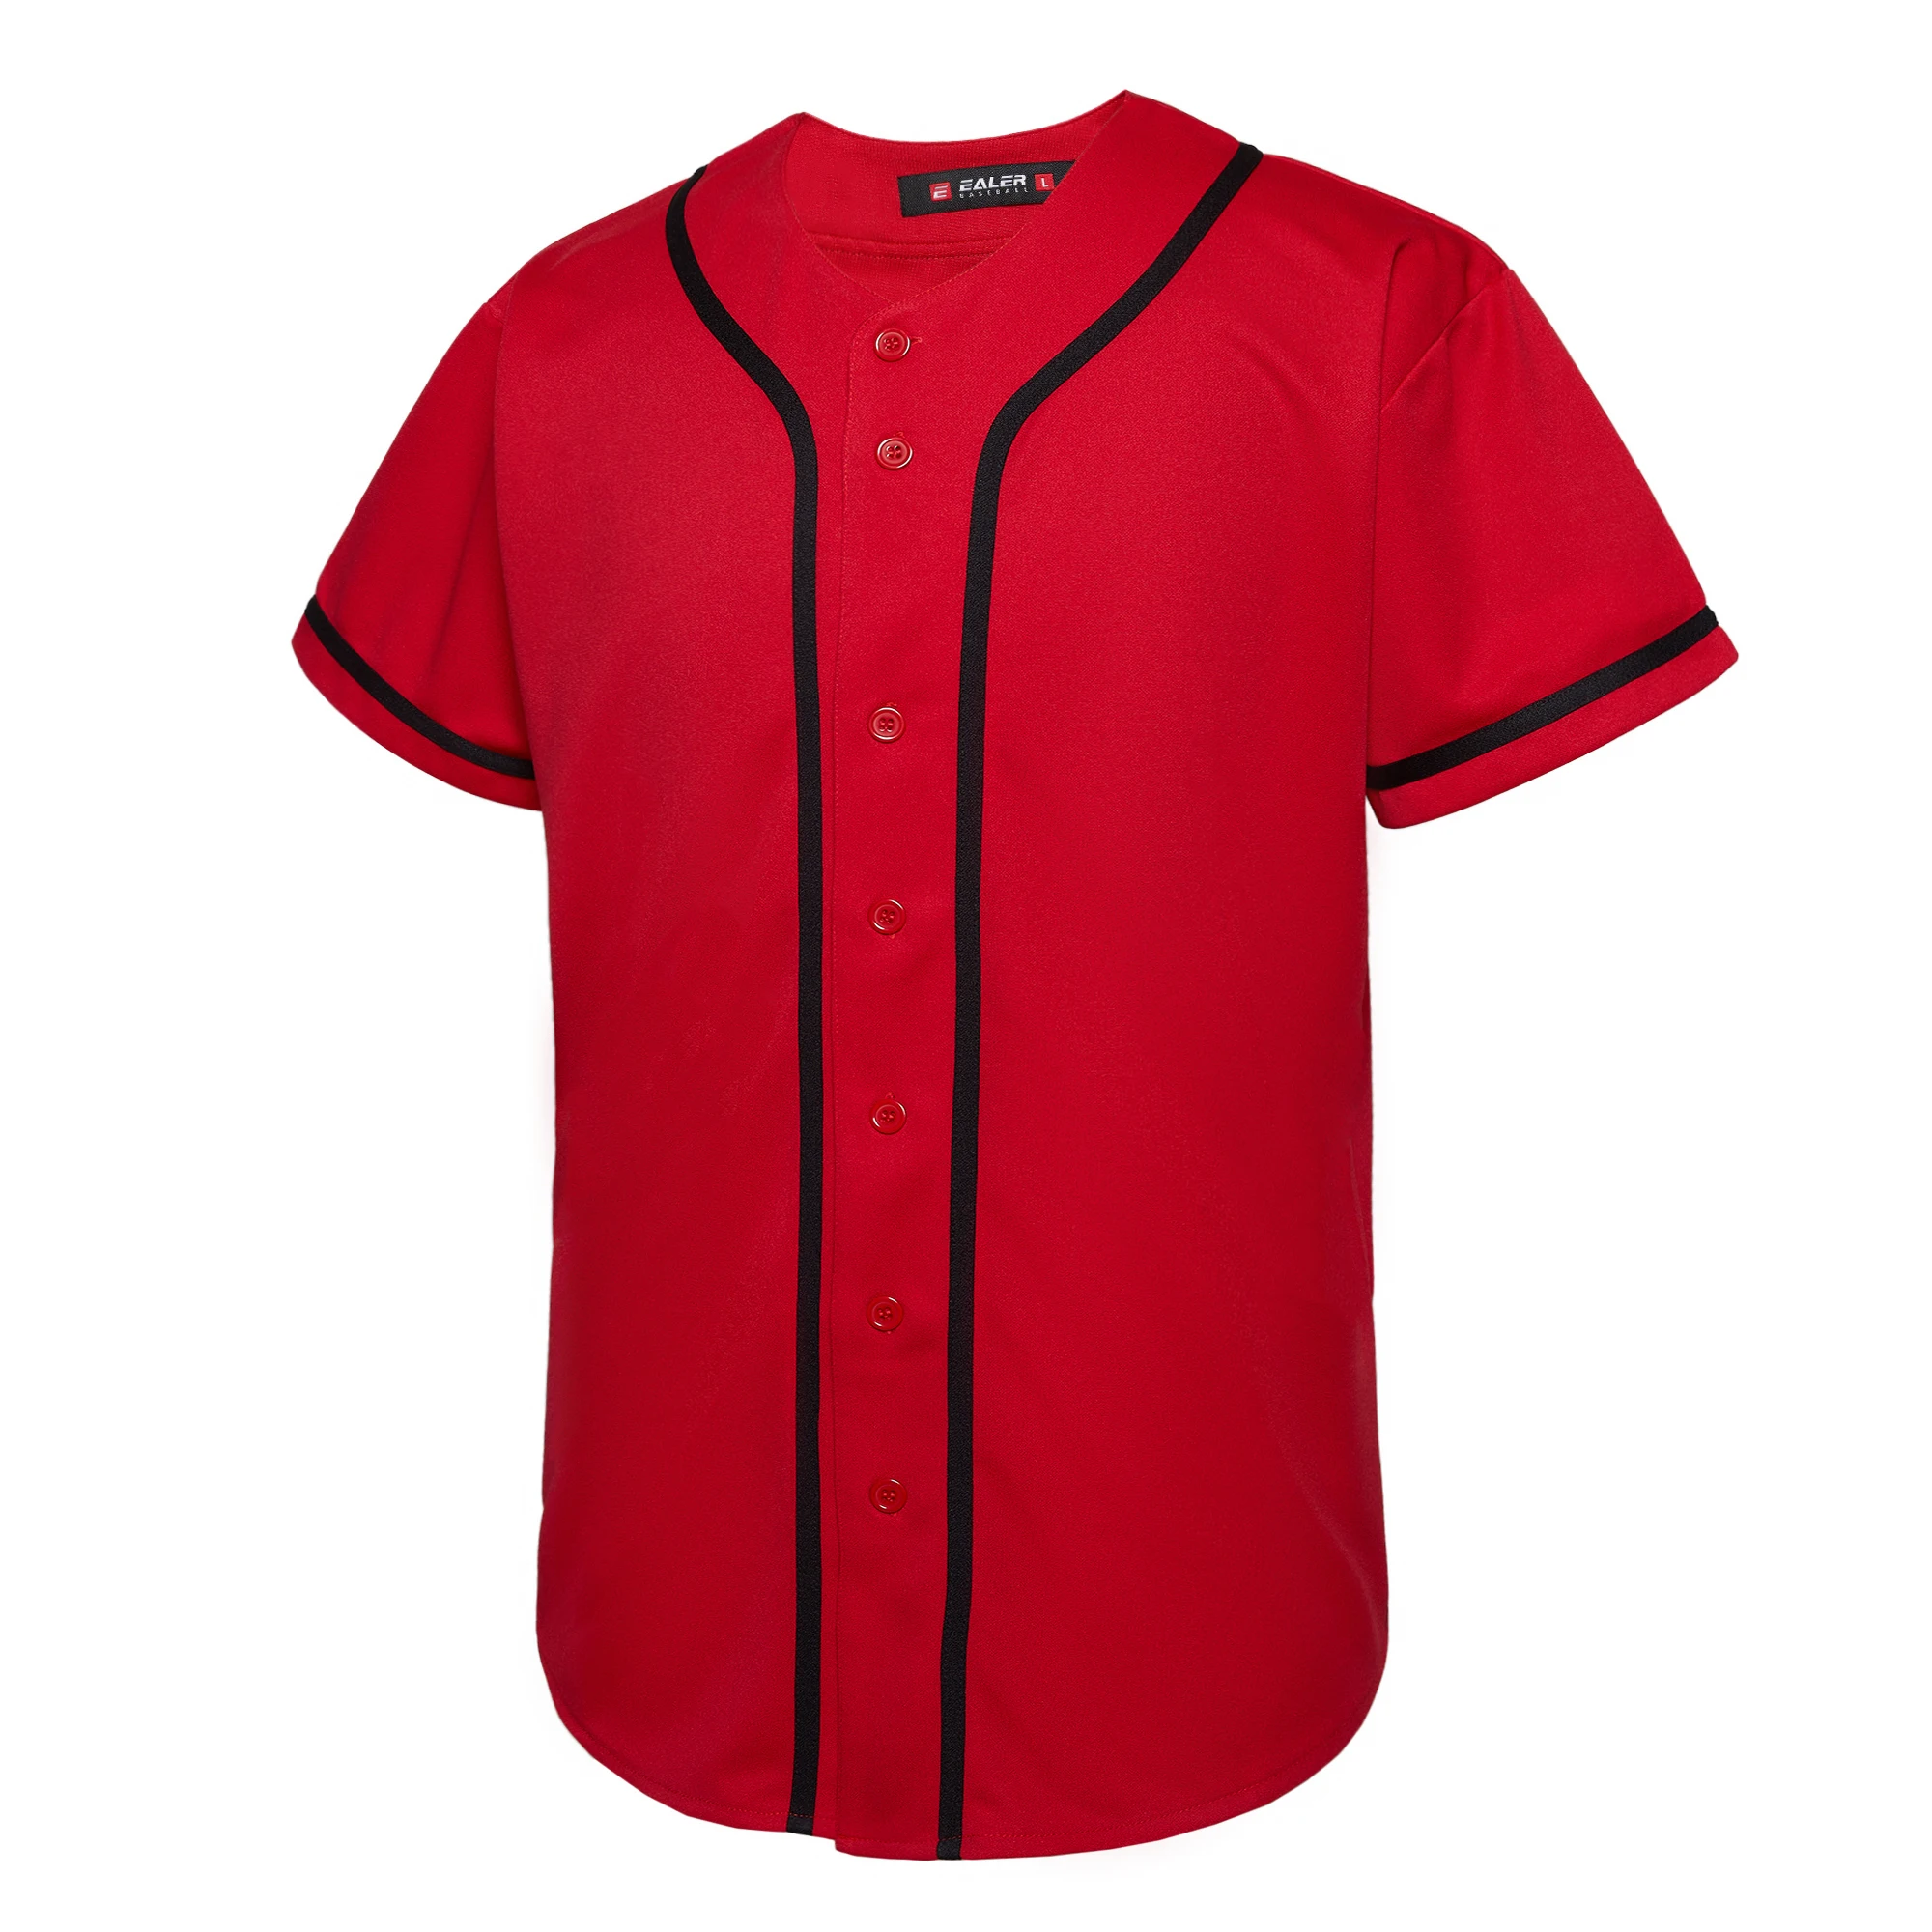 Wholesale cheap baseball jersey wholesale baseball jersey blank baseball  jersey for sale From m.